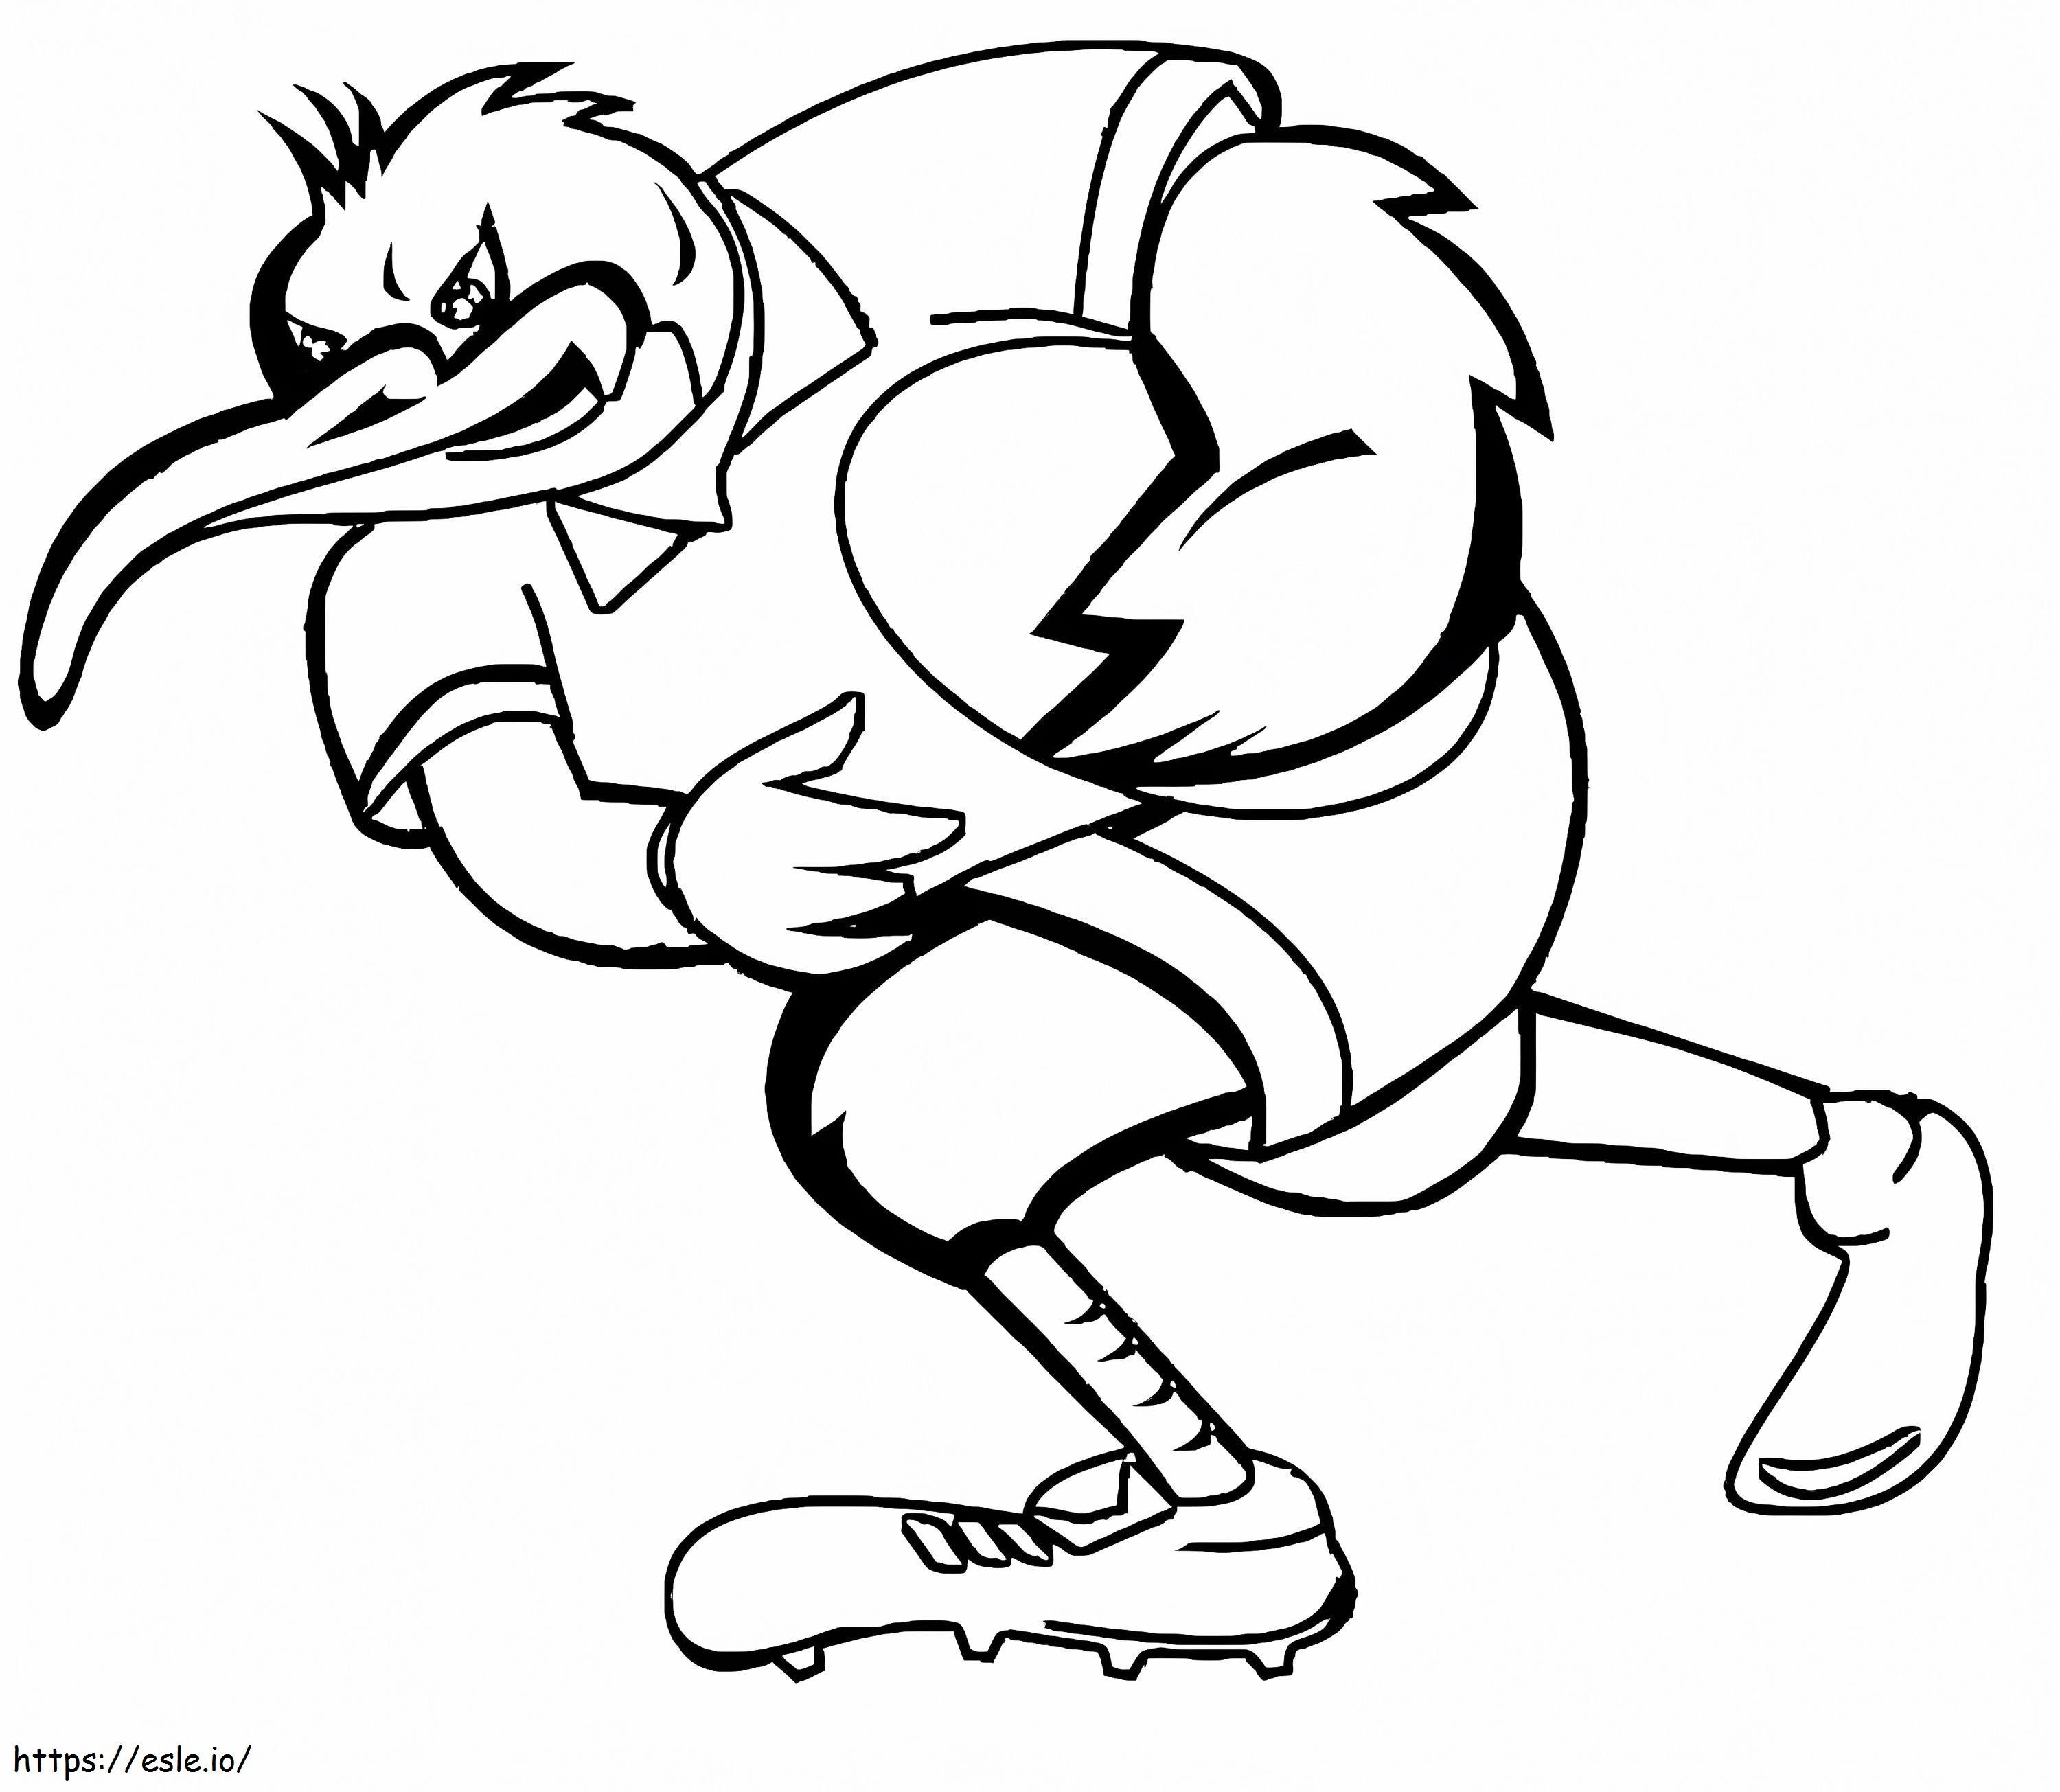 Kiwi Bird joacă rugby de colorat